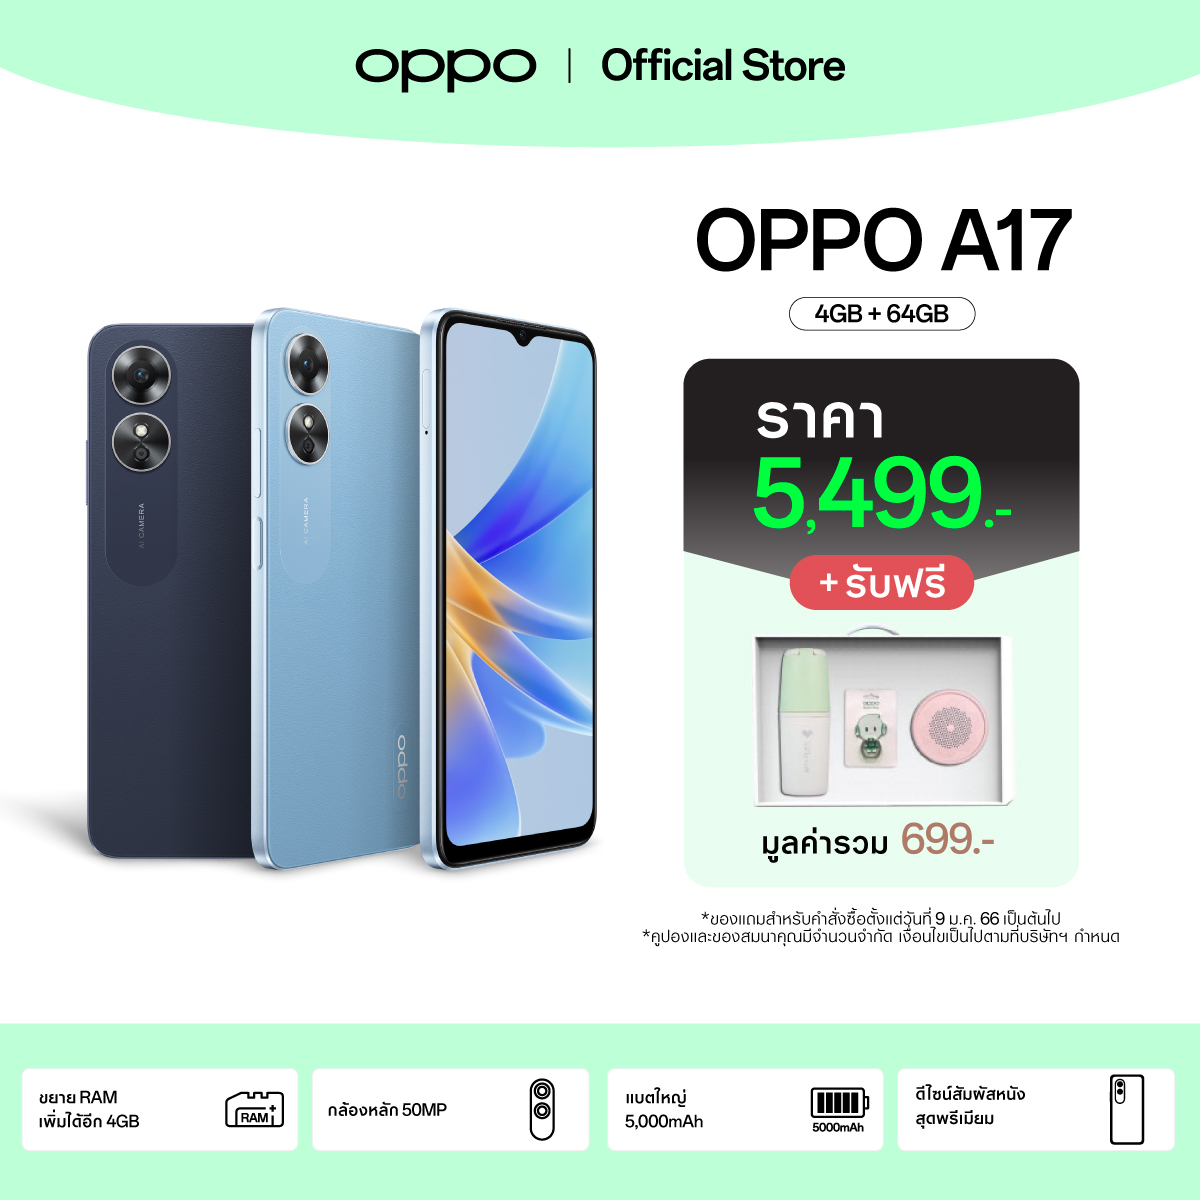 [New] OPPO A17 (4+64) | โทรศัพท์มือถือ ขยายแรมได้สูงสุด 4GB แบตเตอรี่ใหญ่ ดีไซน์พรีเมียม